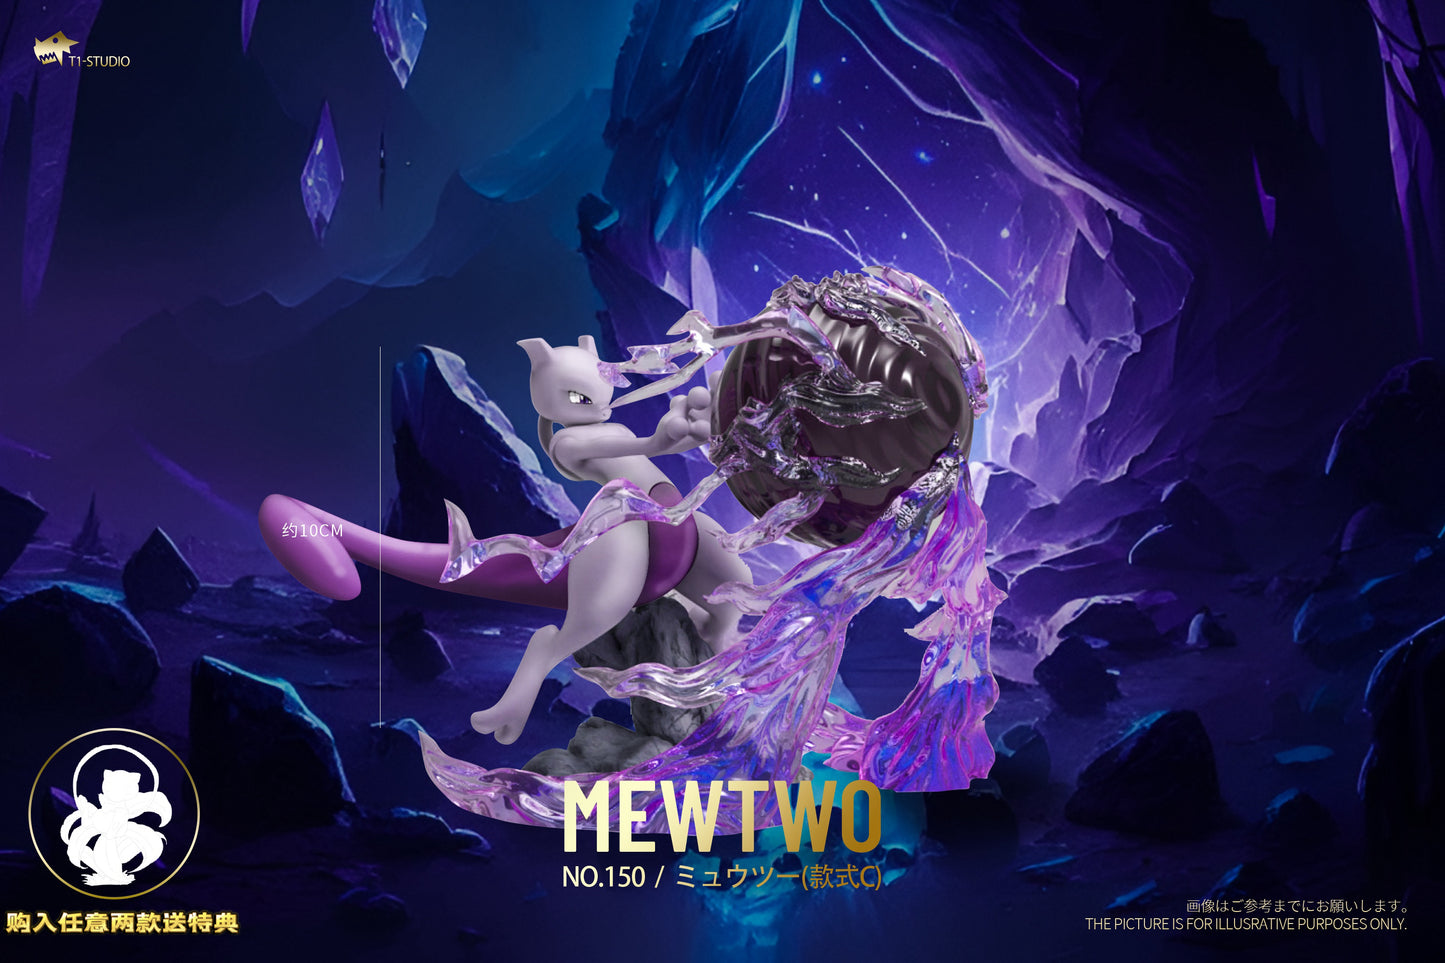 〖 Pre-order〗Pokemon Scale World Mewtwo #150 1:20 - T1 Studio